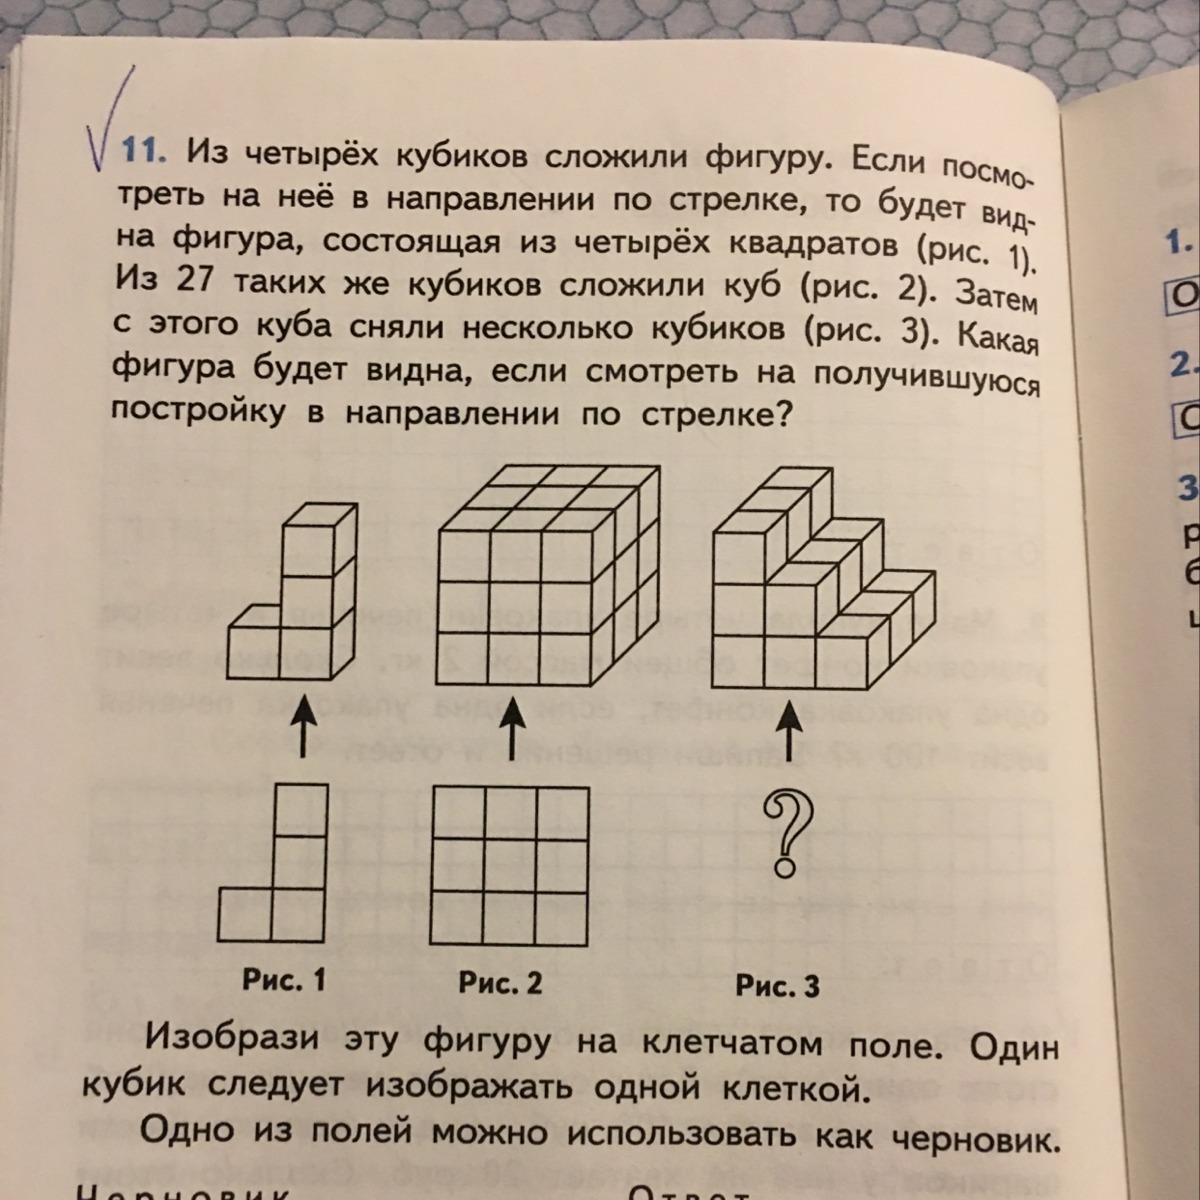 Из одинаковых кубиков изобразили стороны. Стишок про кубики. Из трёх кубиков сложили постройку. Из 4 одинаковых кубиков.